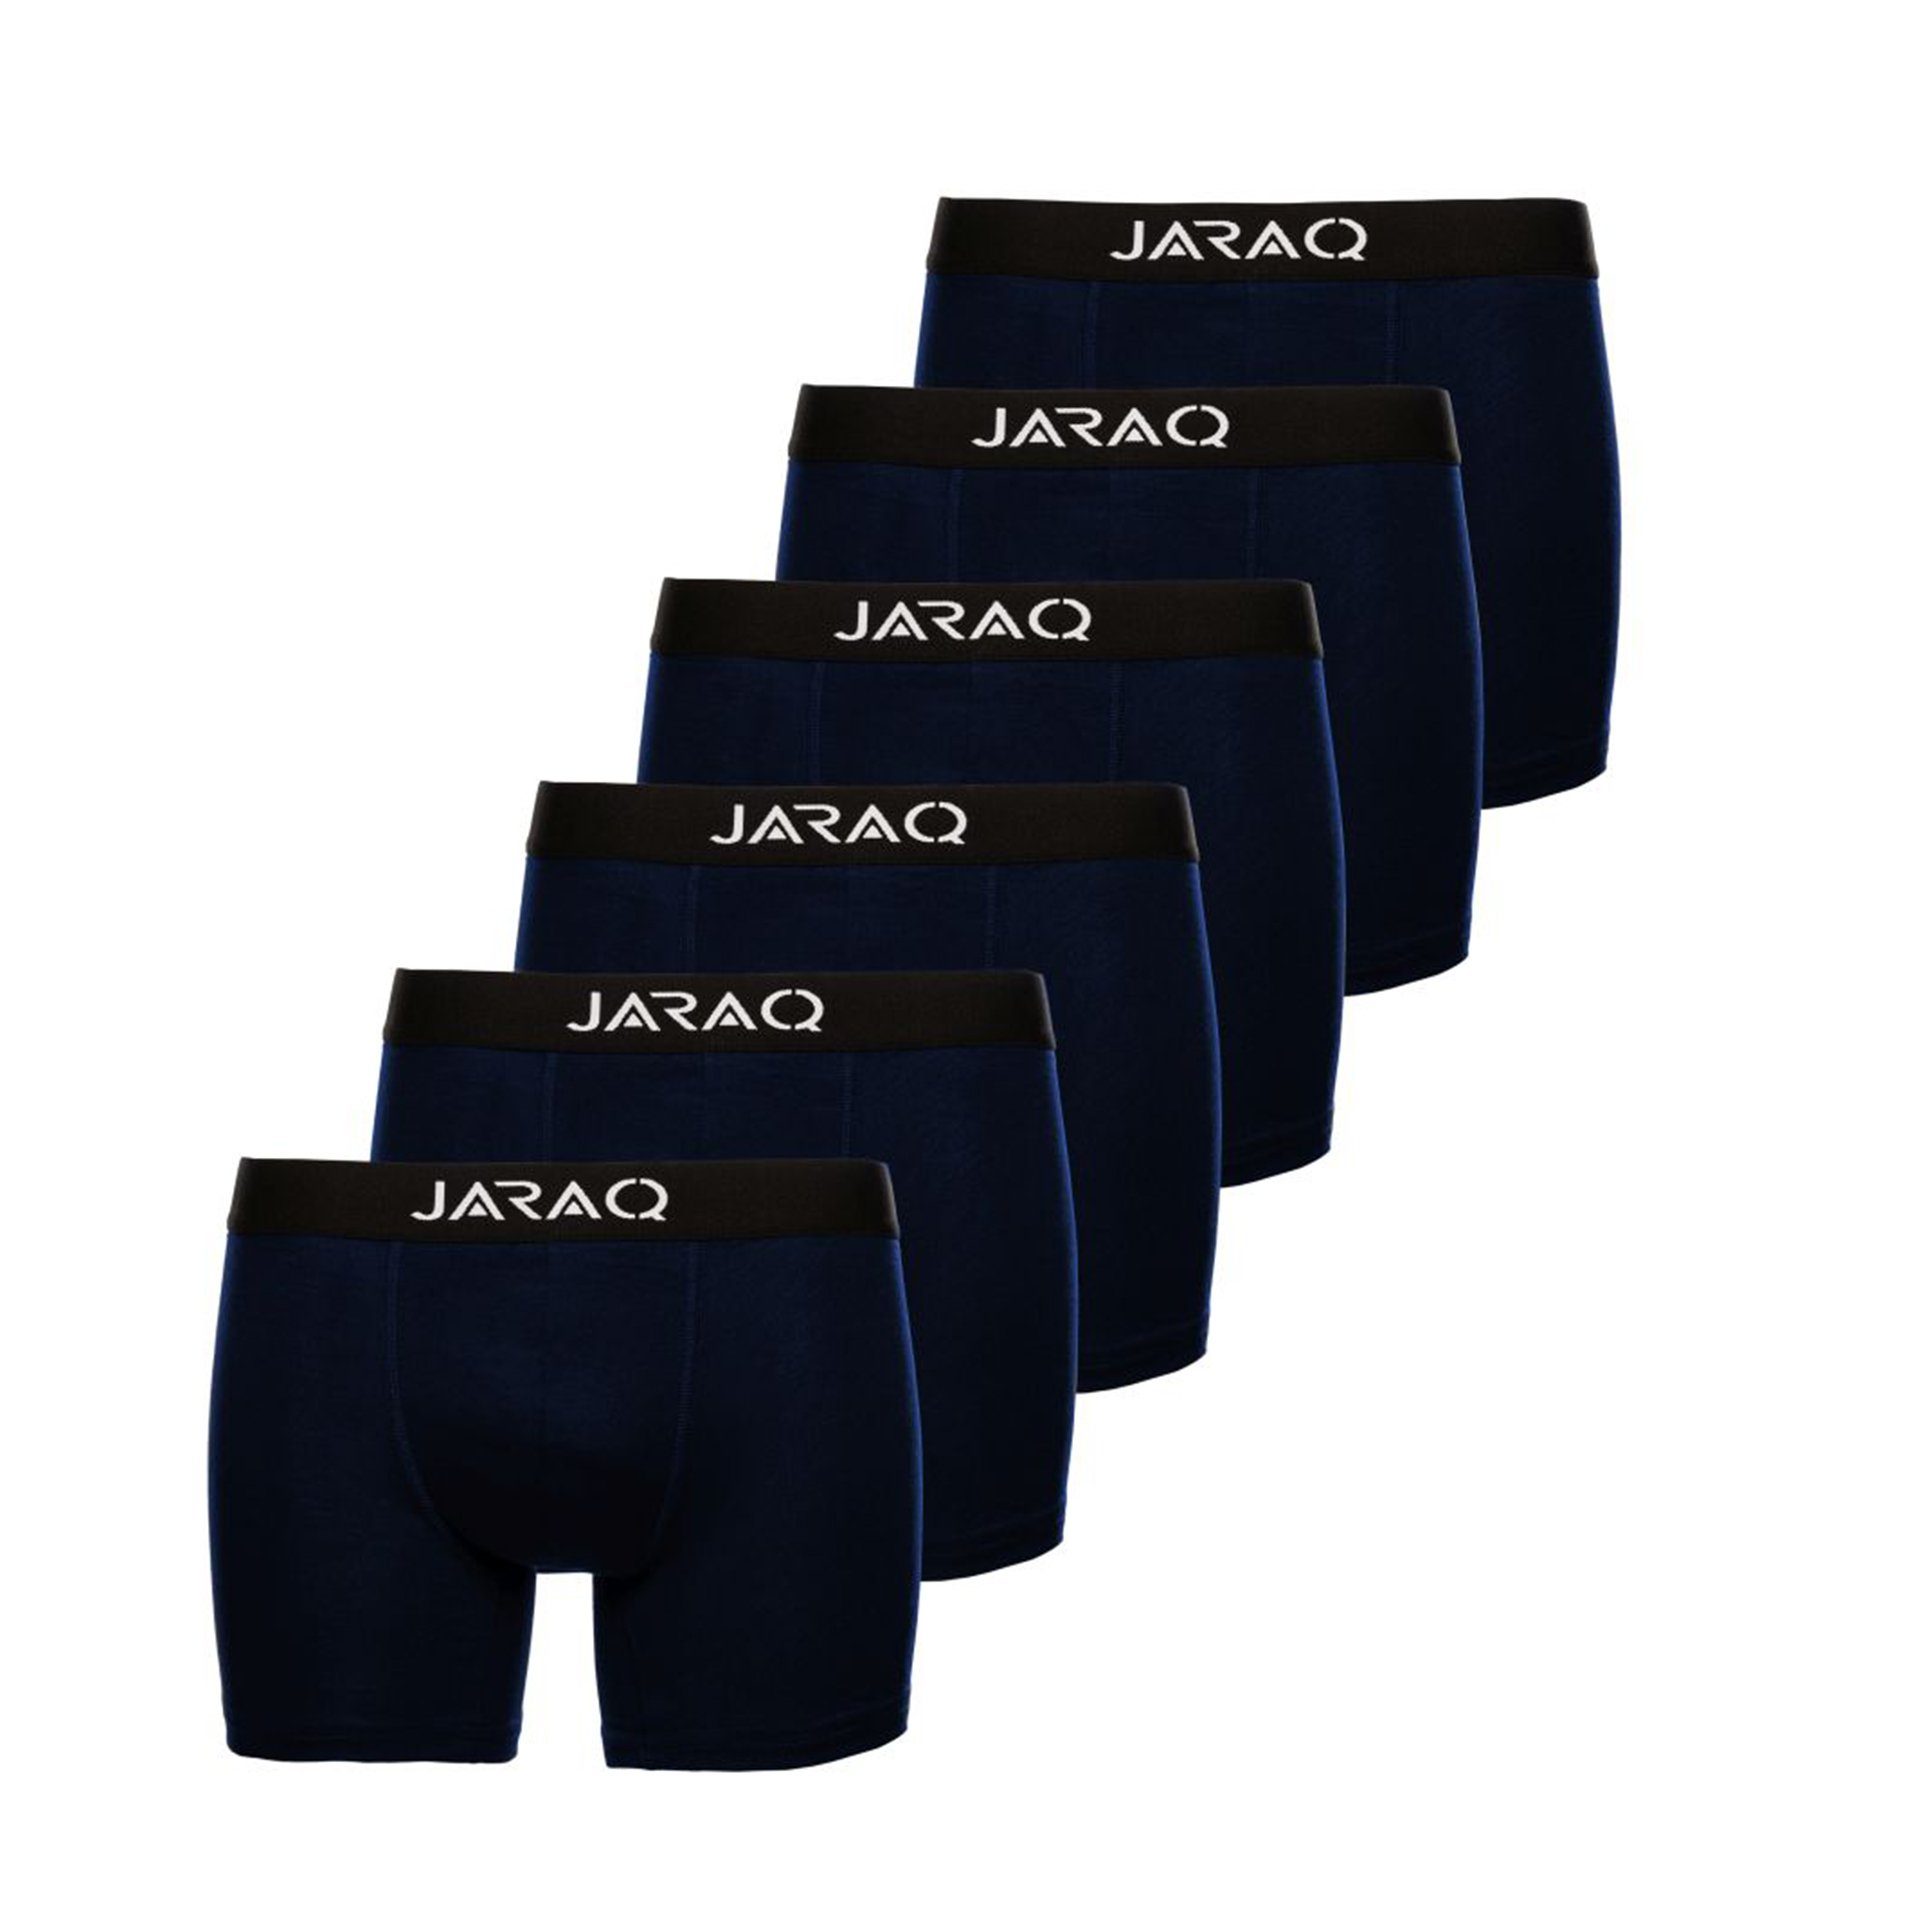 Pack für Bambus Perfekte Unterhosen Boxershorts Blau JARAQ 4XL Herren 6er JARAQ - Boxer Männer S Passform